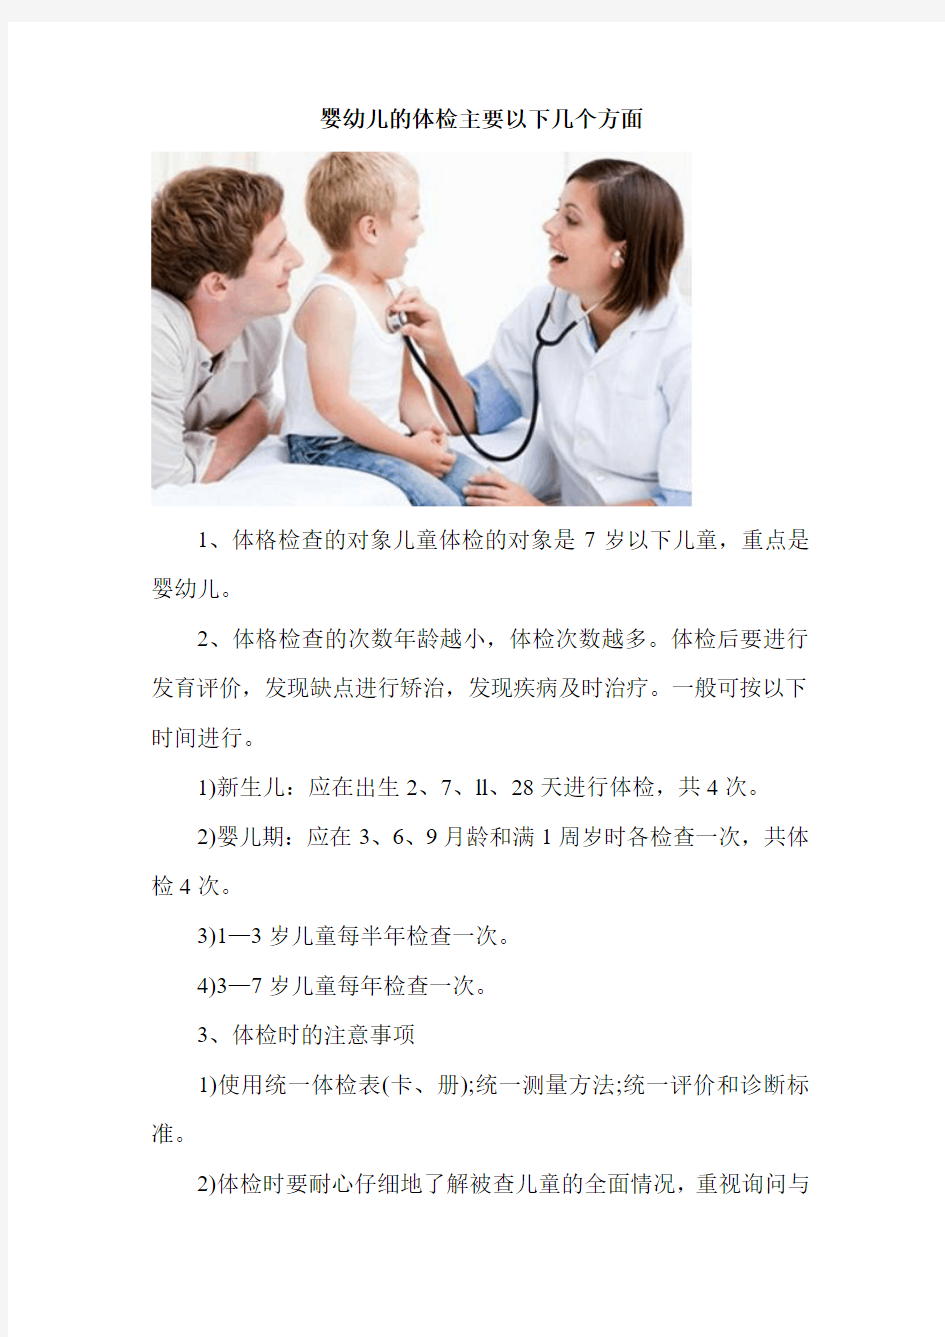 婴幼儿的体检主要以下几个方面